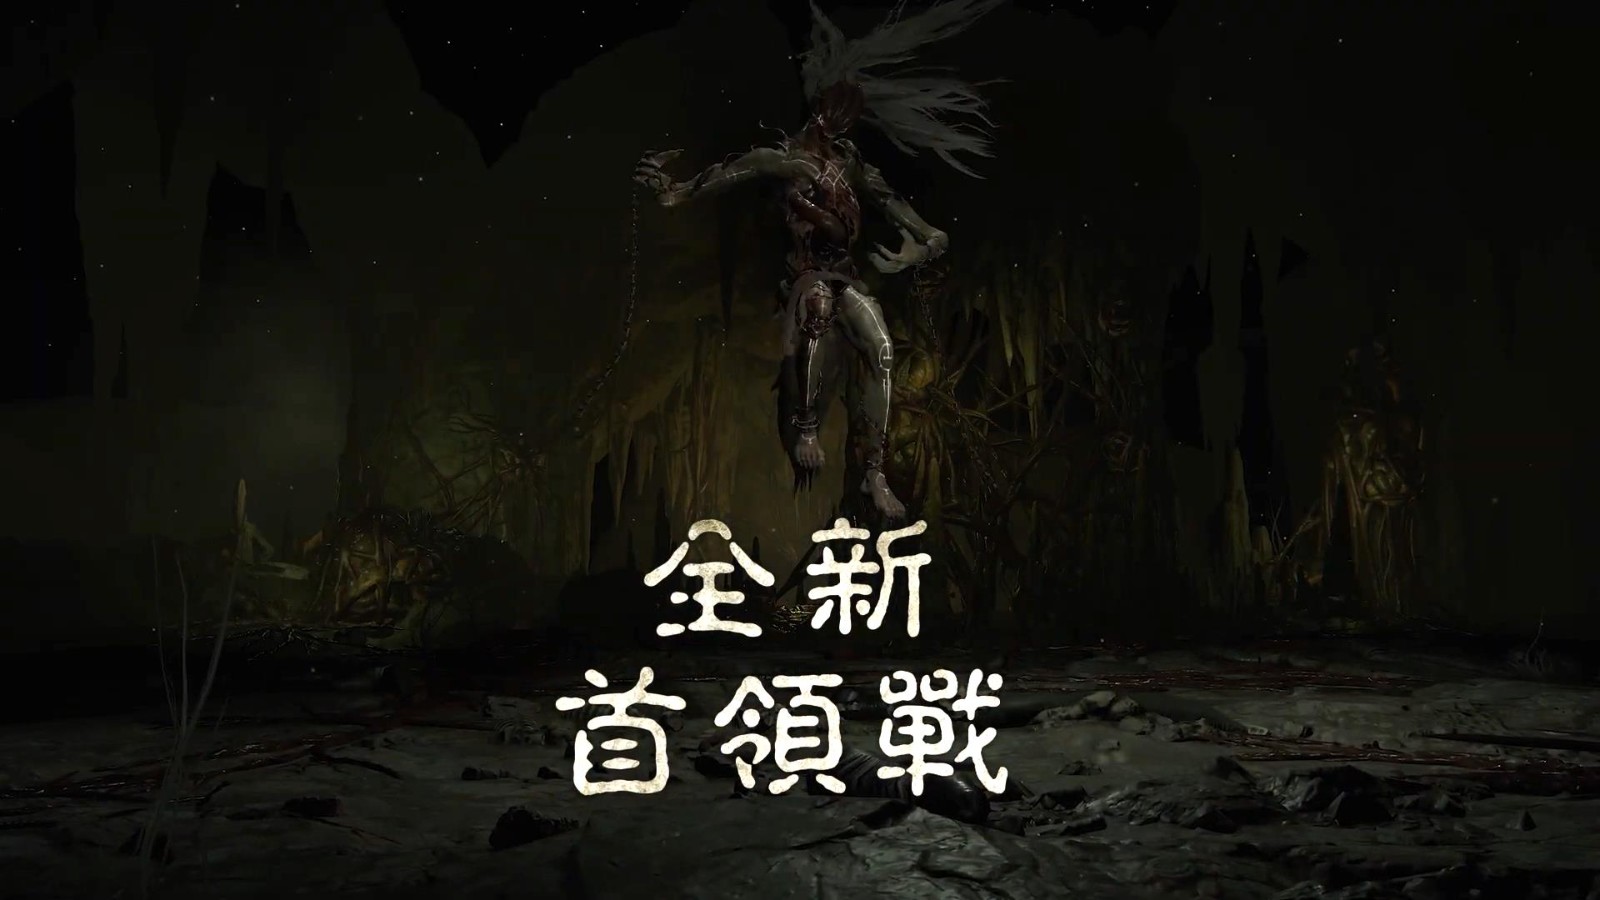 《暗黑4》第一赛季中文宣传片 大堆恐怖怪物杀来